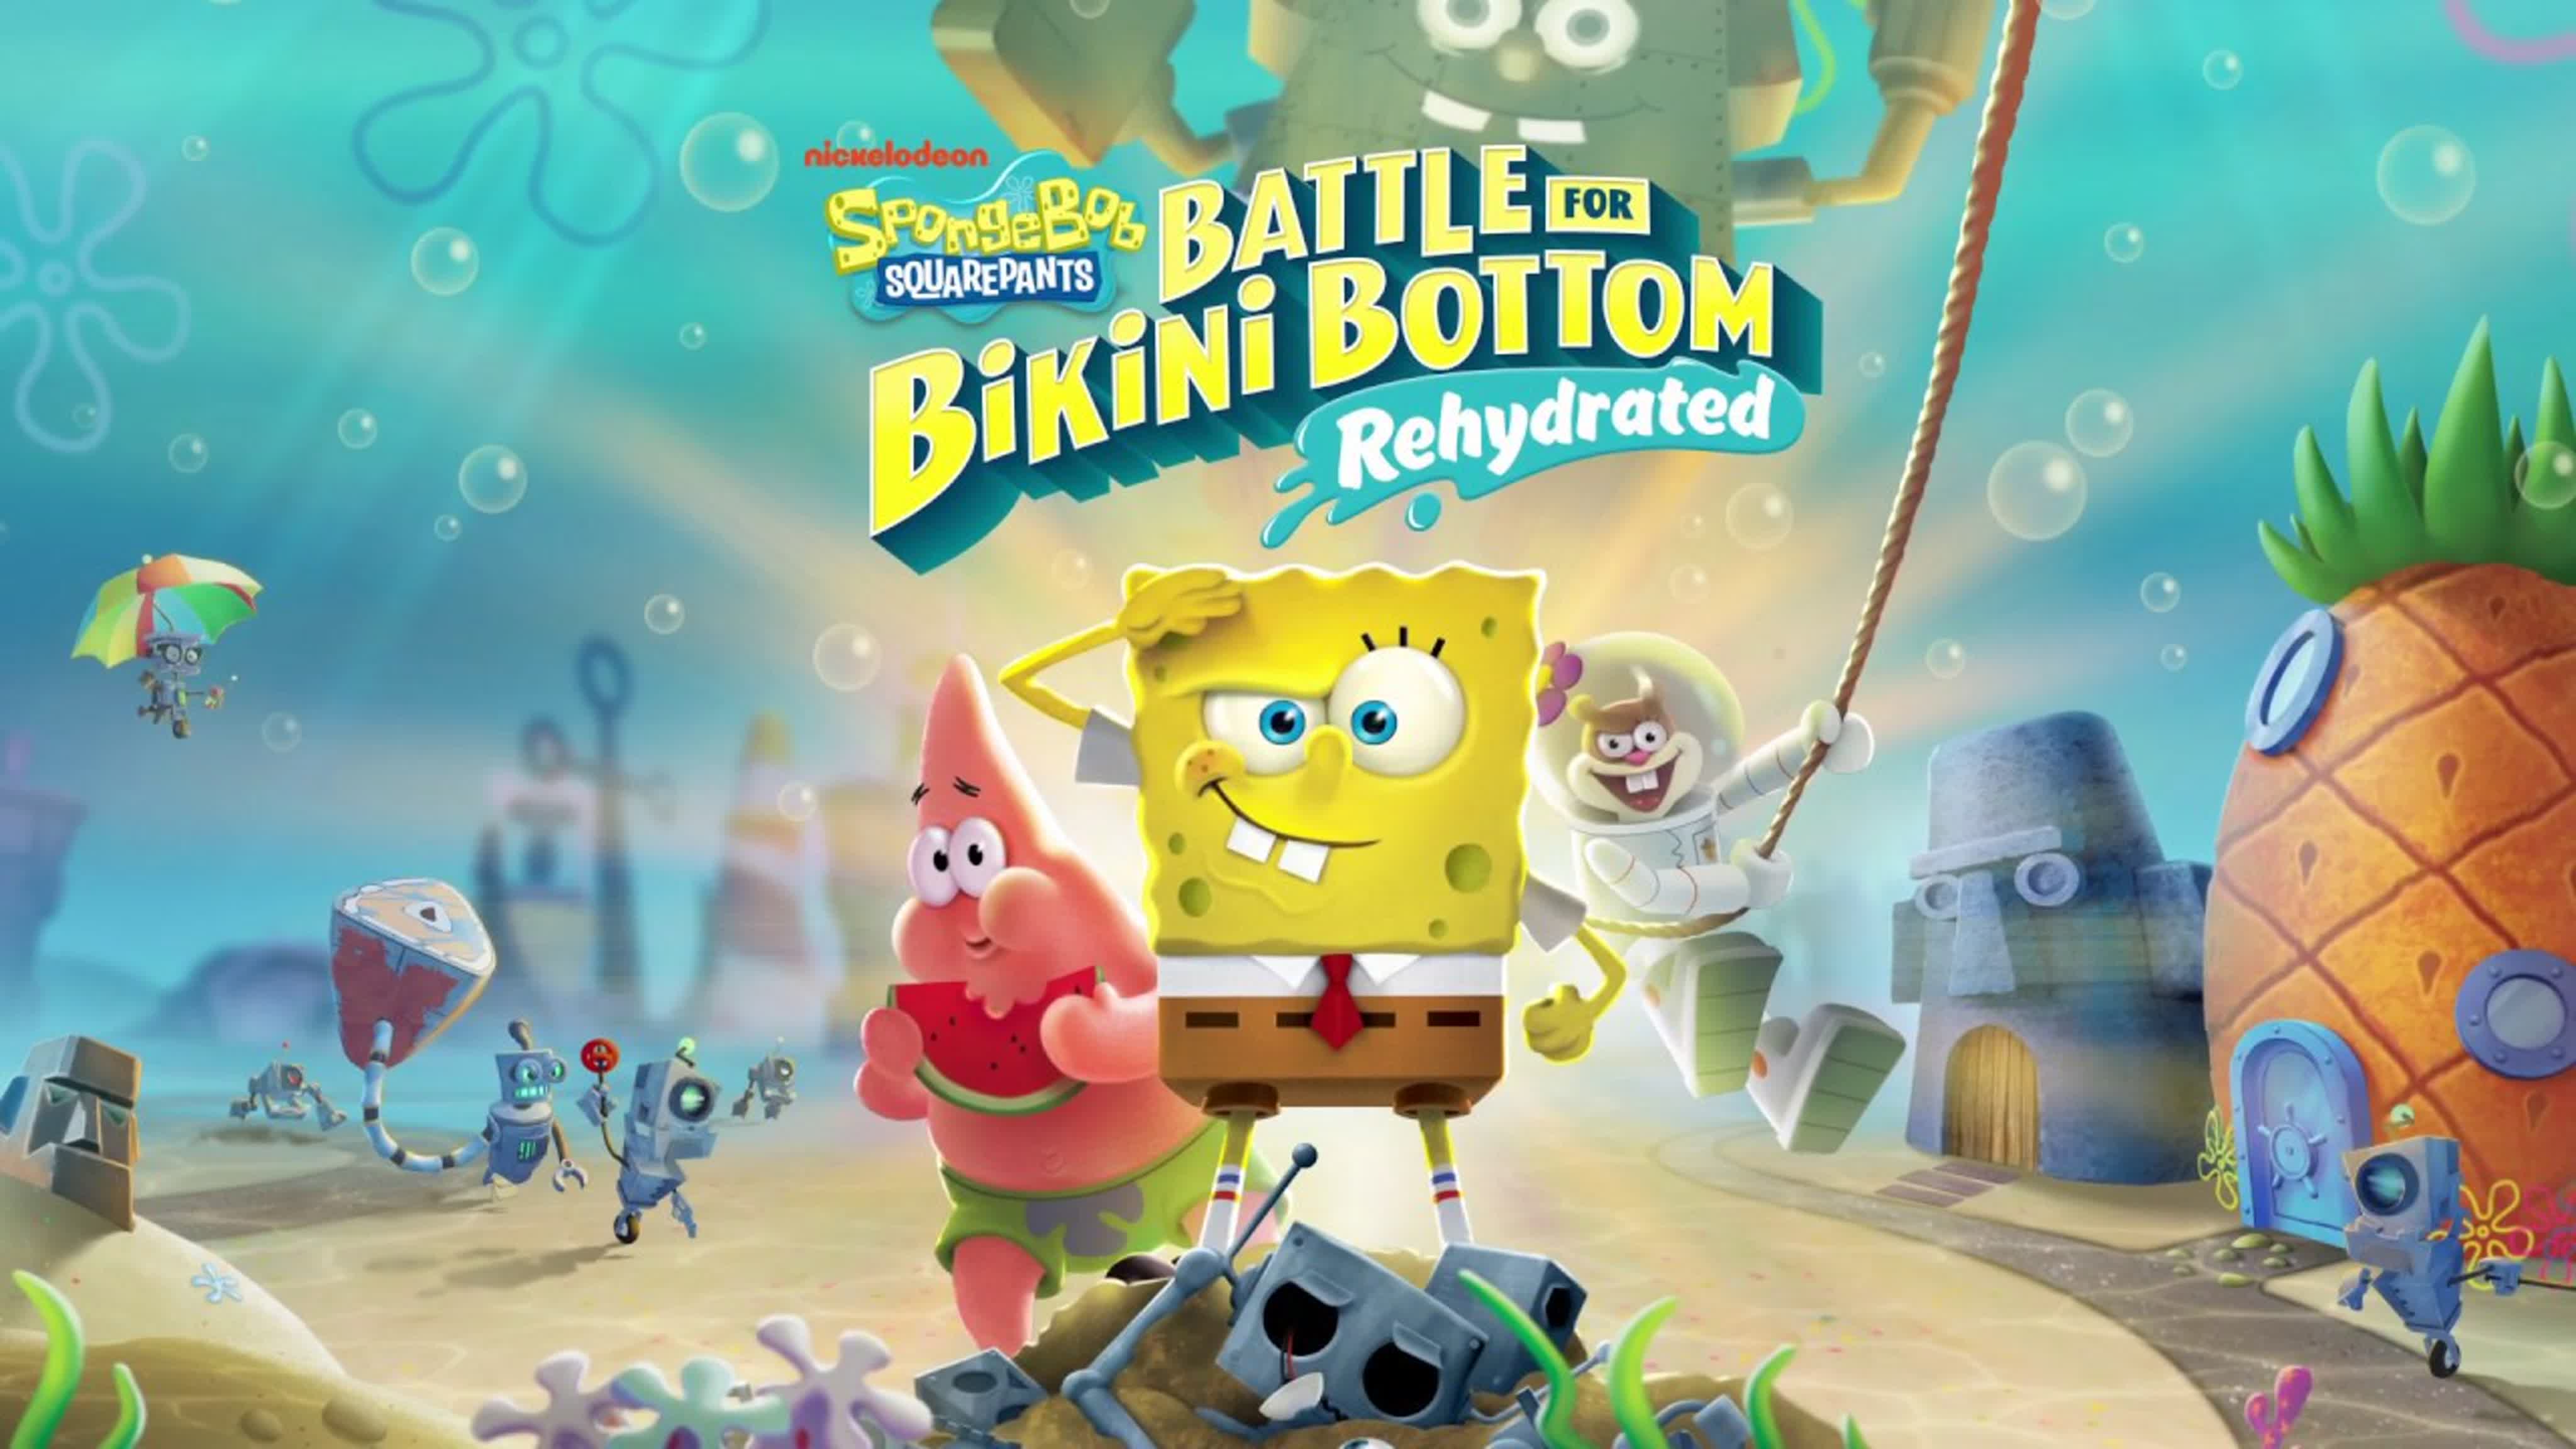 Игры спанч боб бикини боттом. Губка Боб бикини Боттом игра. Spongebob Squarepants: Battle for Bikini bottom - rehydrated. Губка Боб квадратные штаны игра 2020. Губка Боб квадратные штаны битва за бикини Боттом.